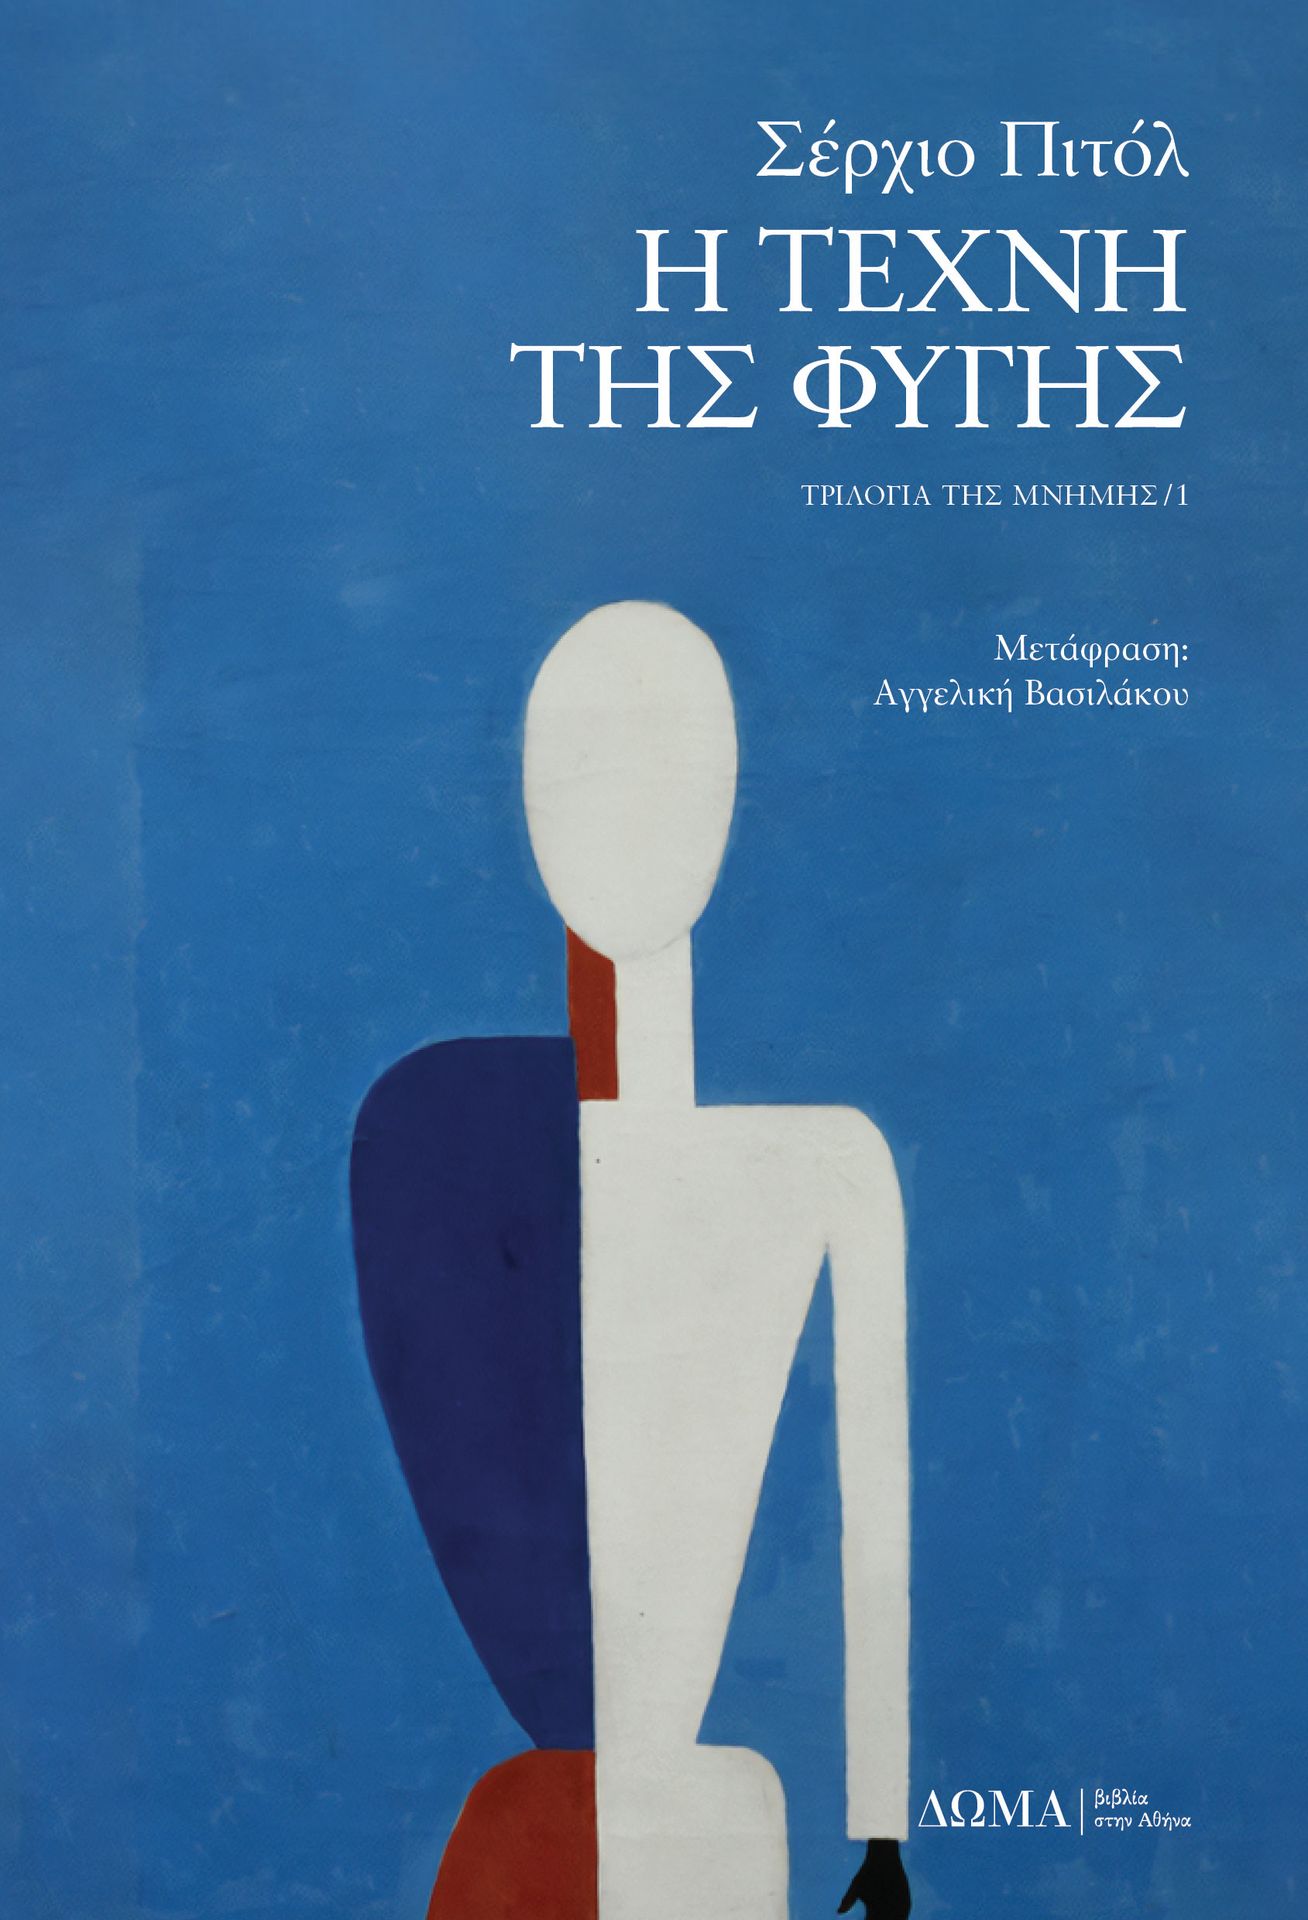 εξώφυλλο του βιβλίου «Η τέχνη της φυγής» του Σέρχιο Πιτόλ